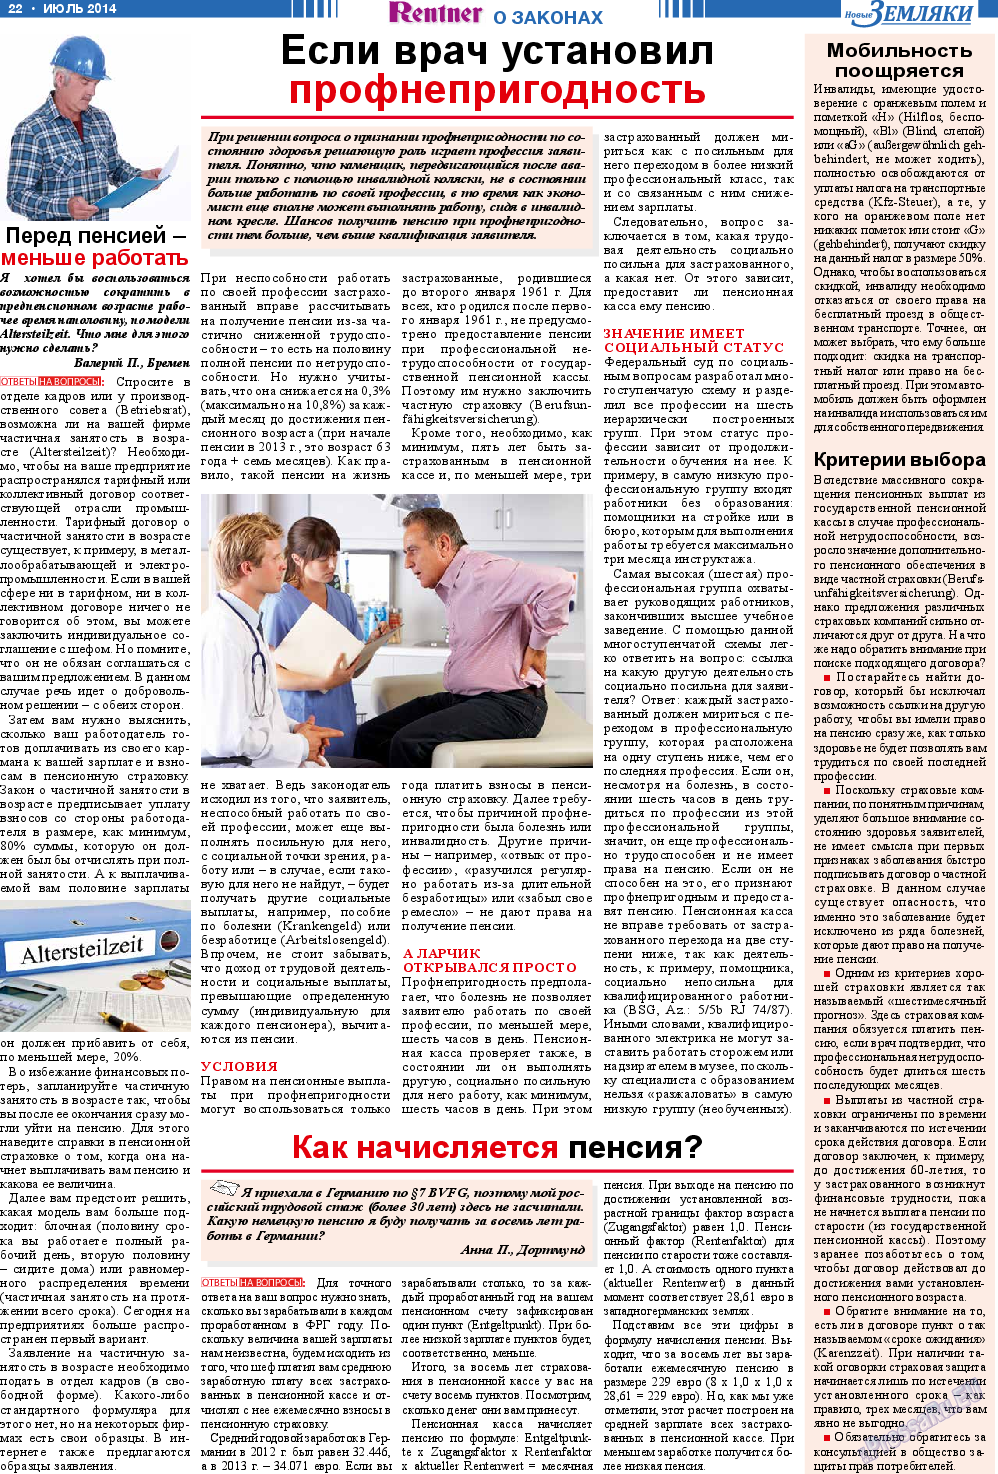 Новые Земляки, газета. 2014 №7 стр.22